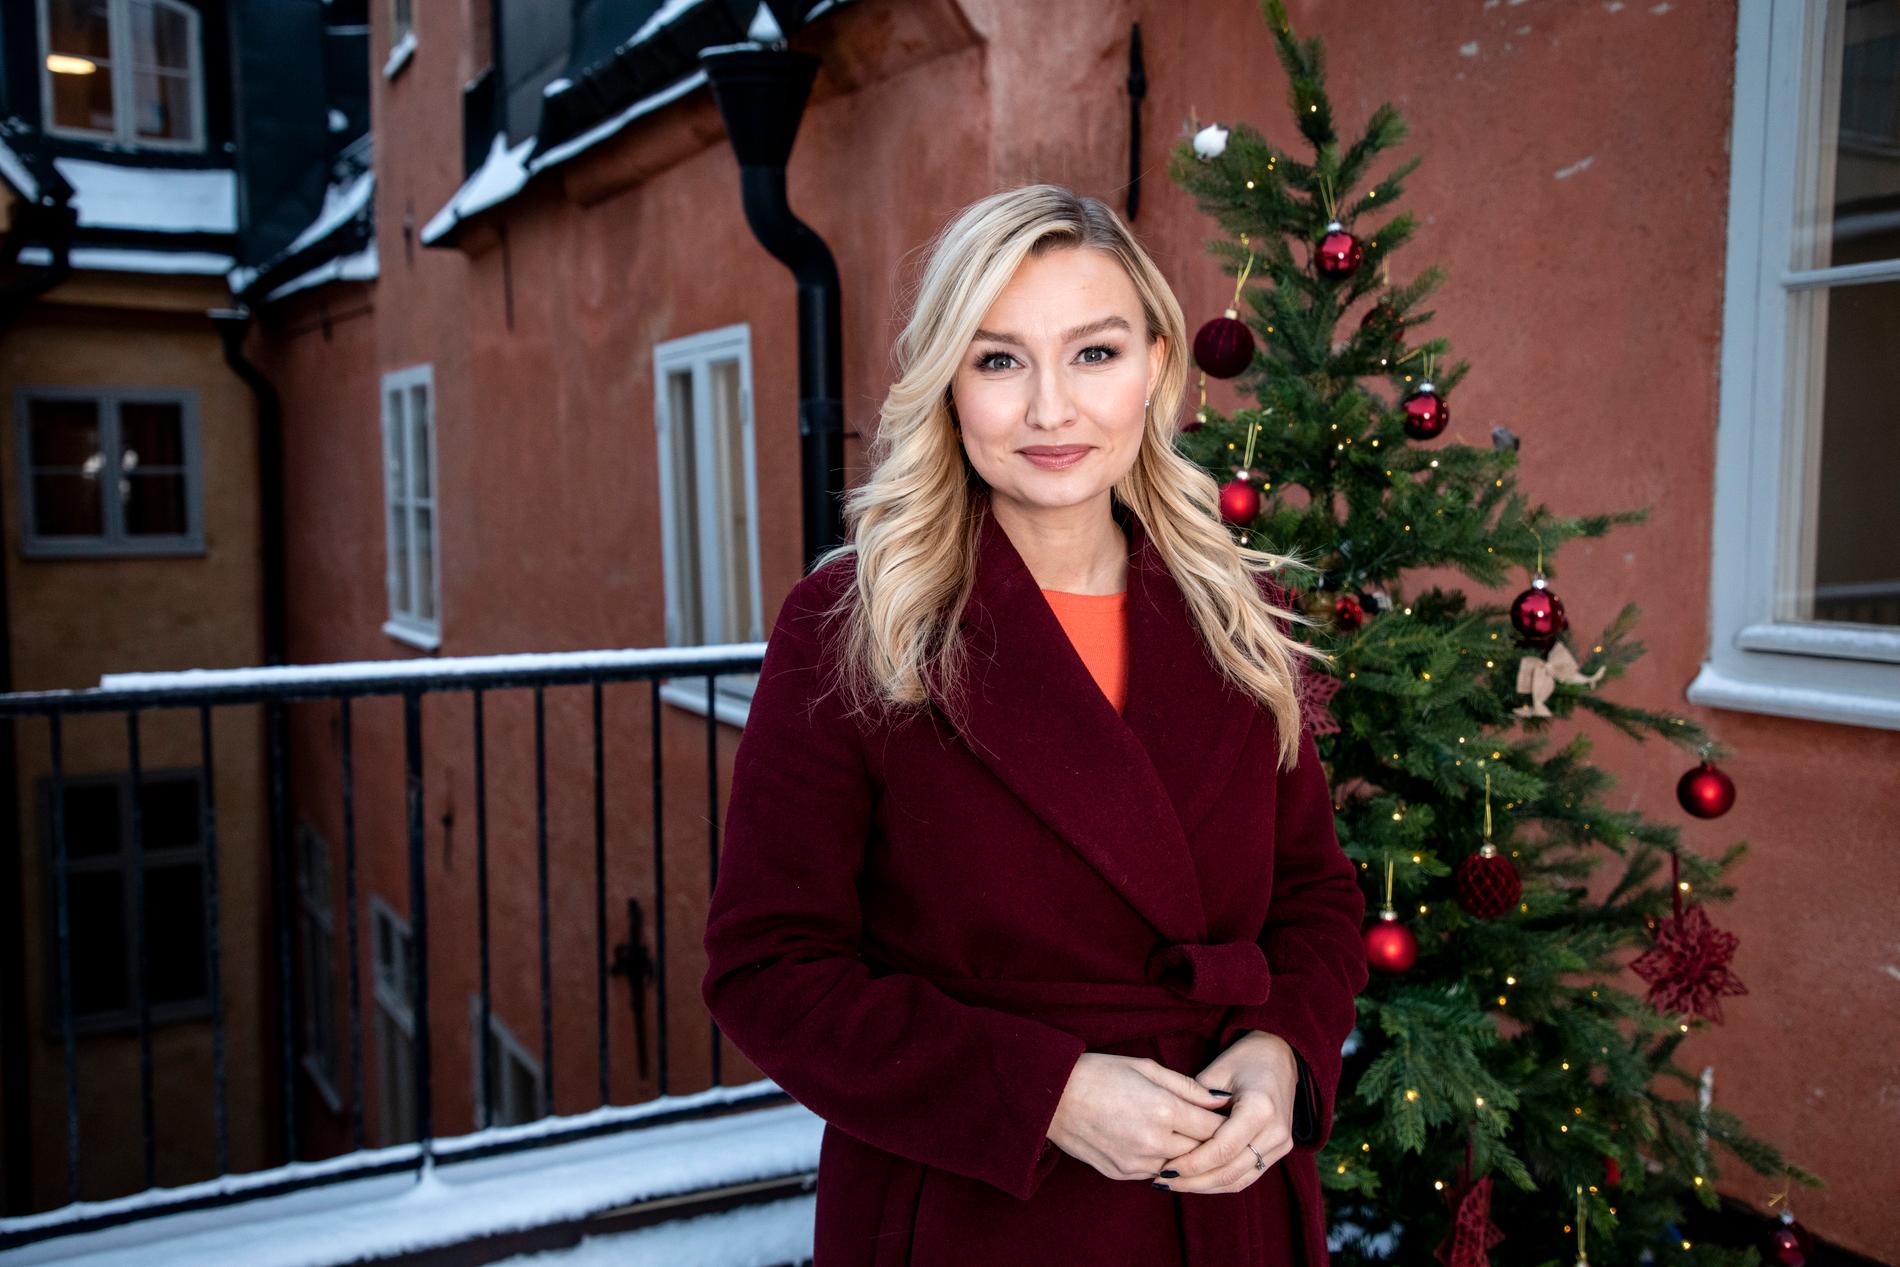 Kristdemokraternas partiledare Ebba Busch håller sitt jultal digitalt från takterassen ovanför Kristdemokraternas riksdagskansli.